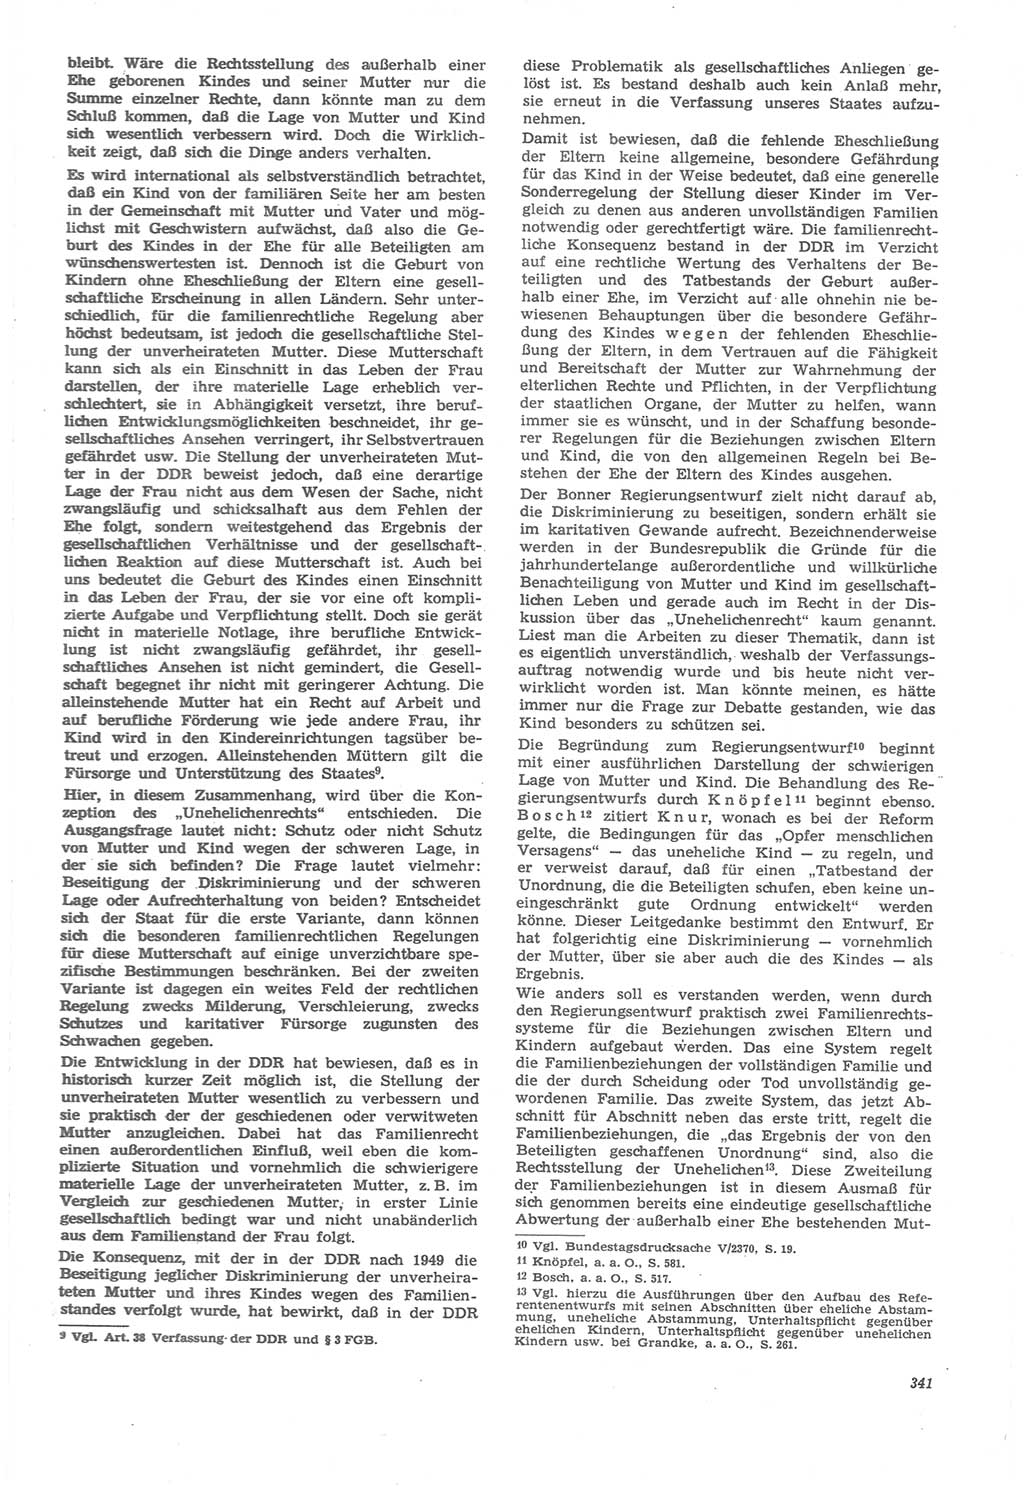 Neue Justiz (NJ), Zeitschrift für Recht und Rechtswissenschaft [Deutsche Demokratische Republik (DDR)], 22. Jahrgang 1968, Seite 341 (NJ DDR 1968, S. 341)